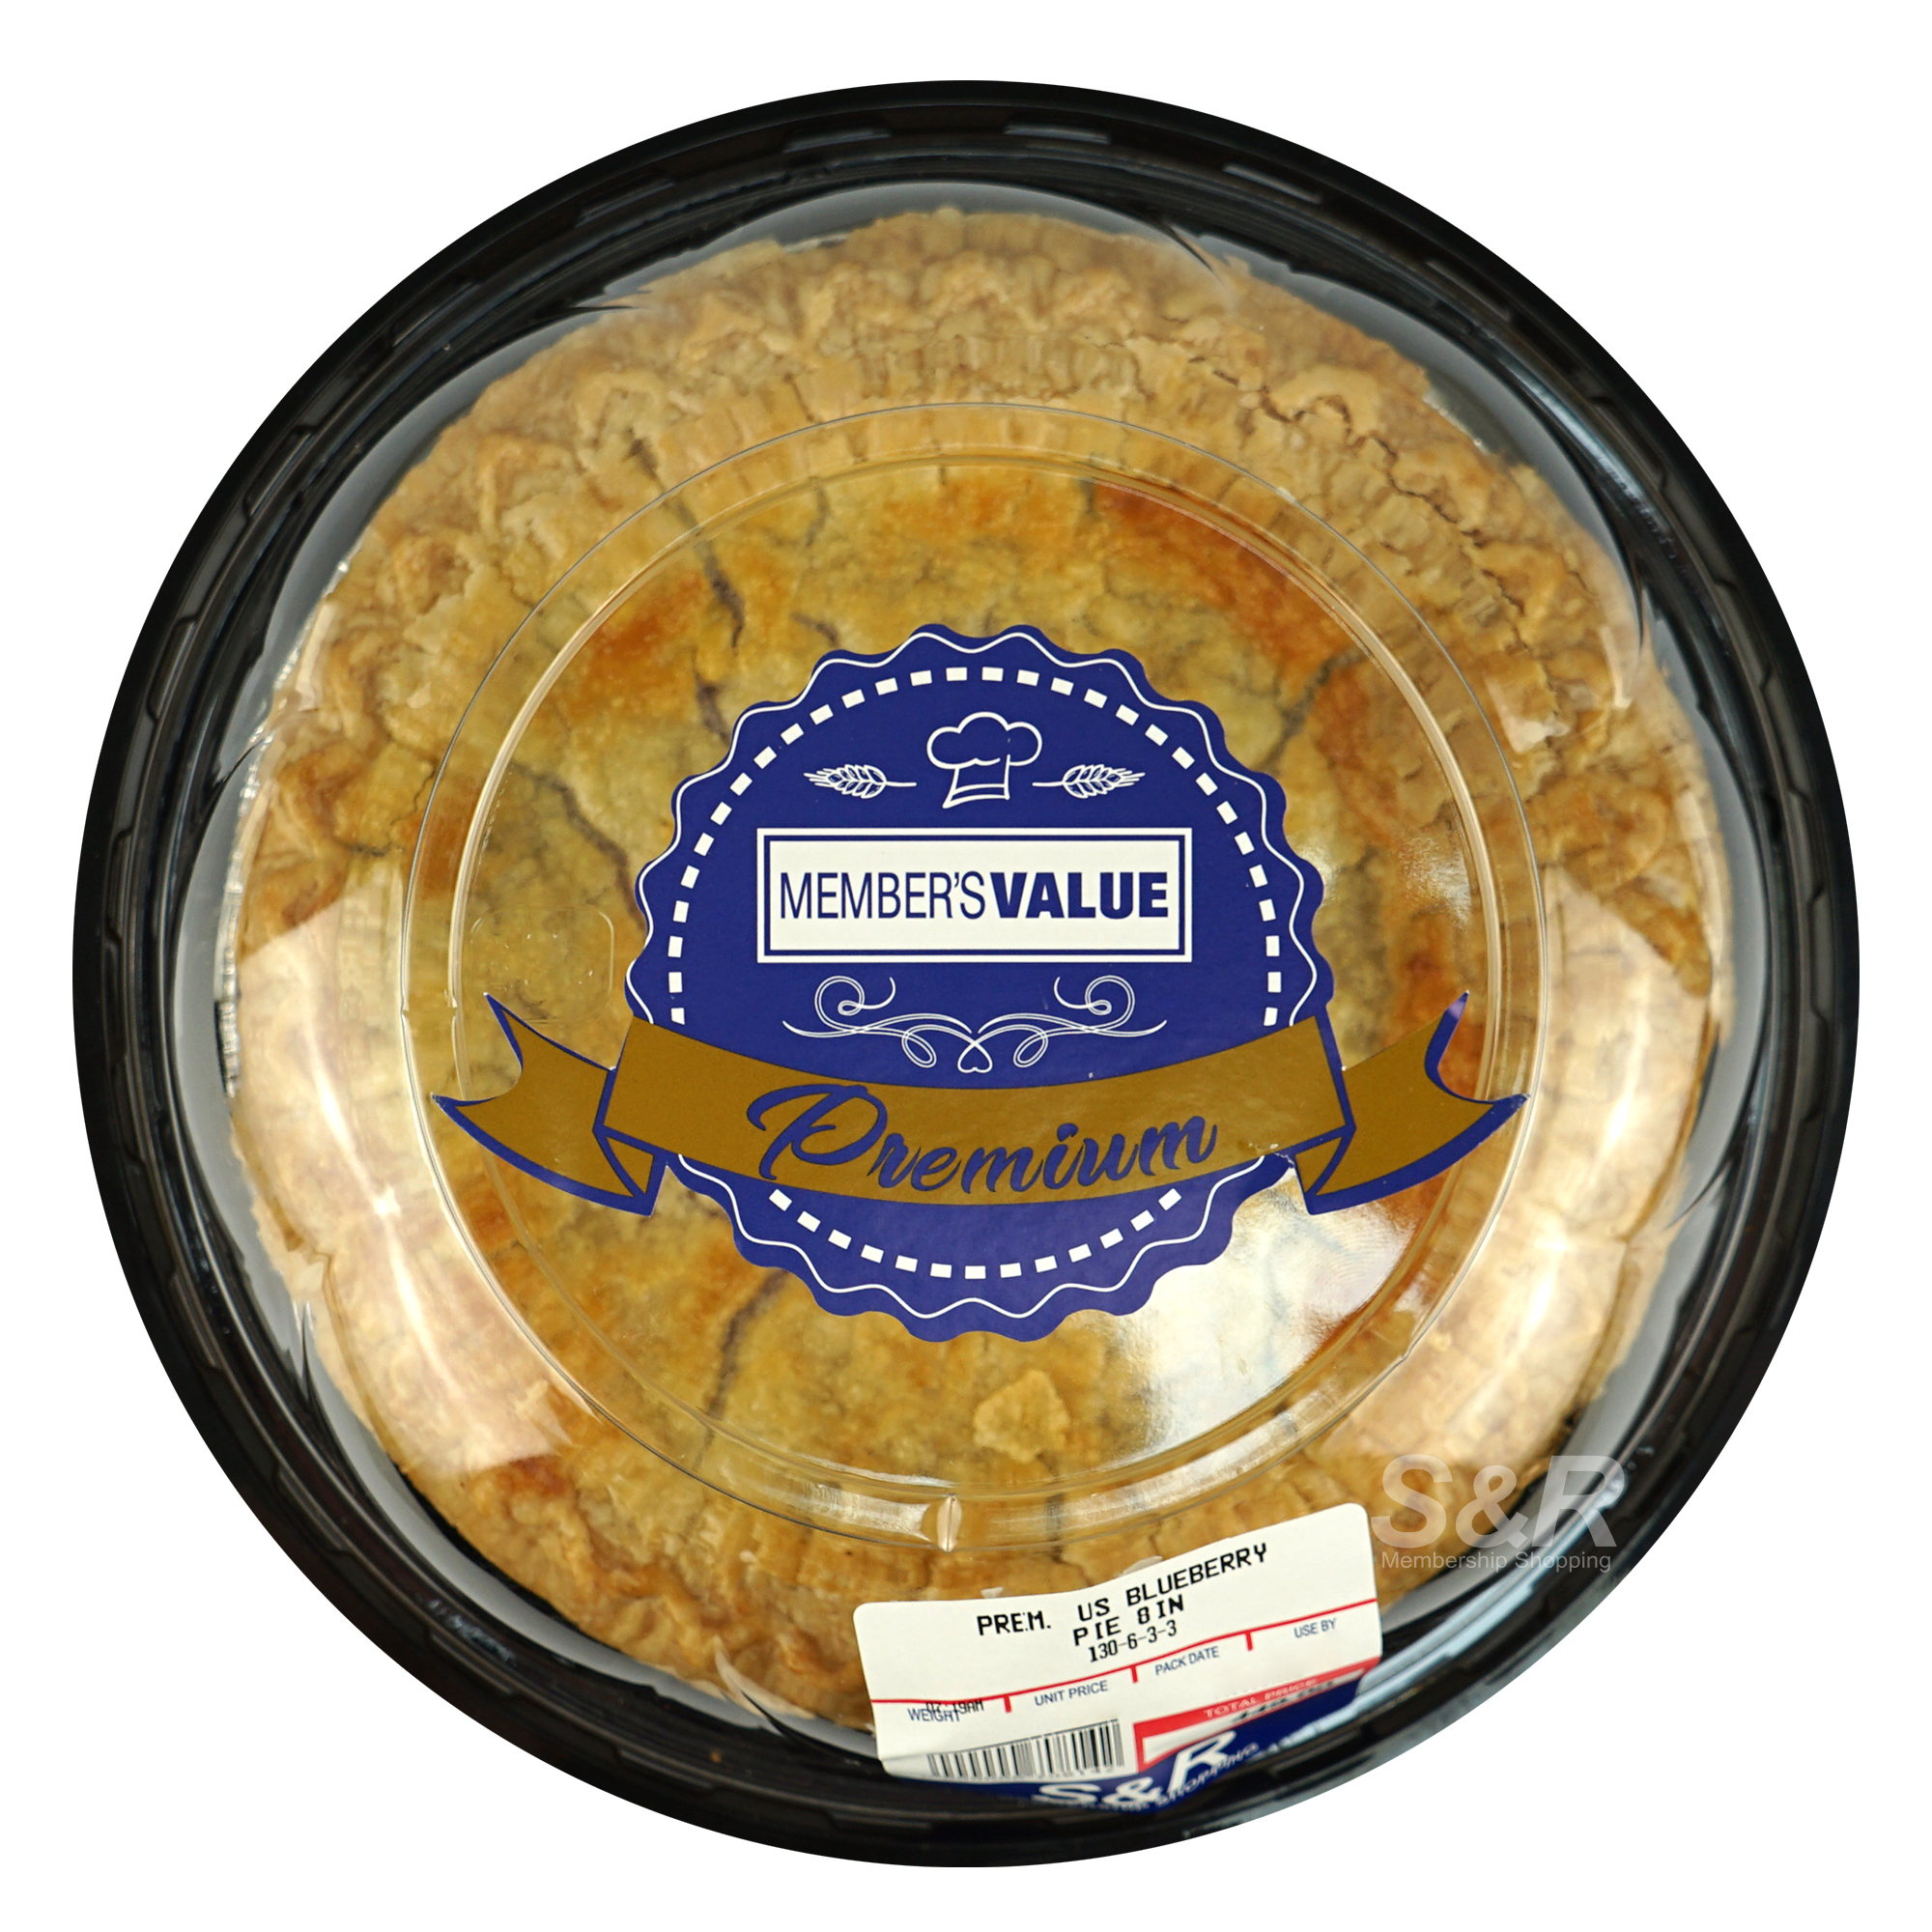 Member's Value US Premium Blueberry Pie 8-inch